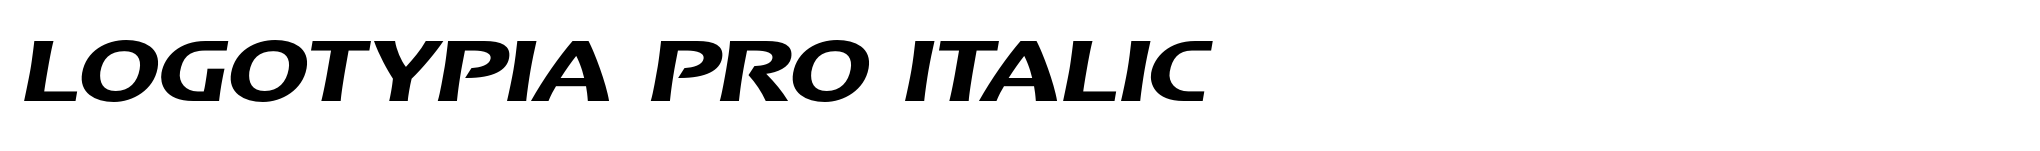 Logotypia Pro Italic image